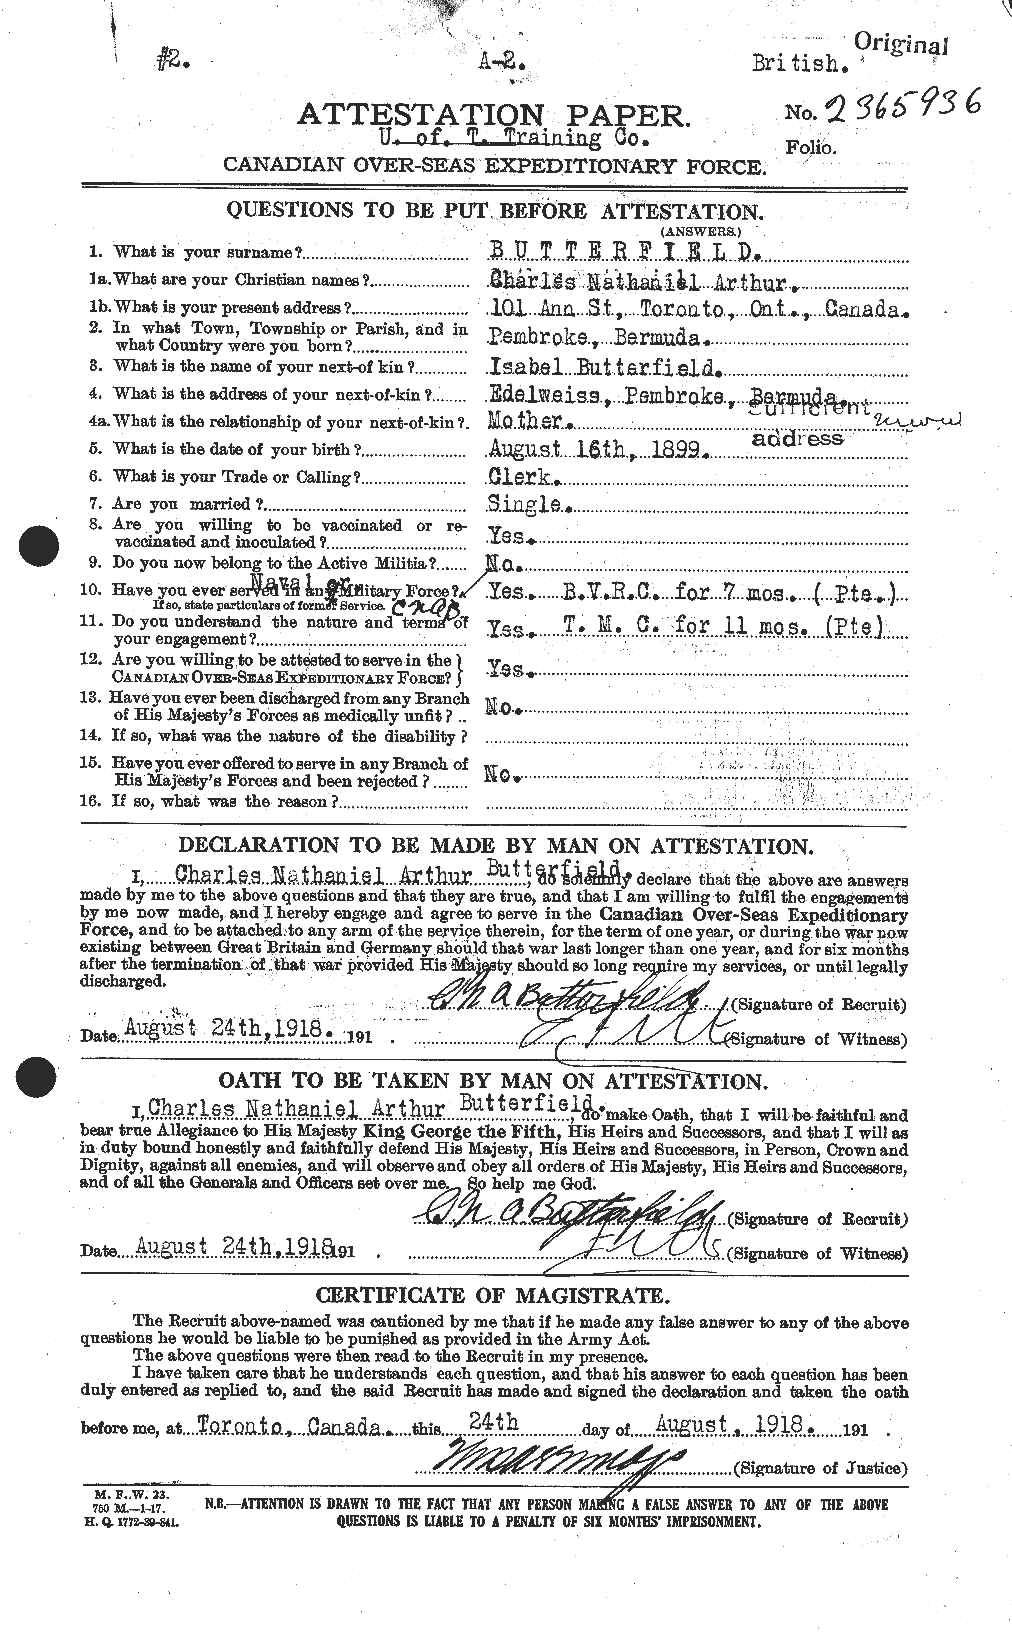 Dossiers du Personnel de la Première Guerre mondiale - CEC 278227a